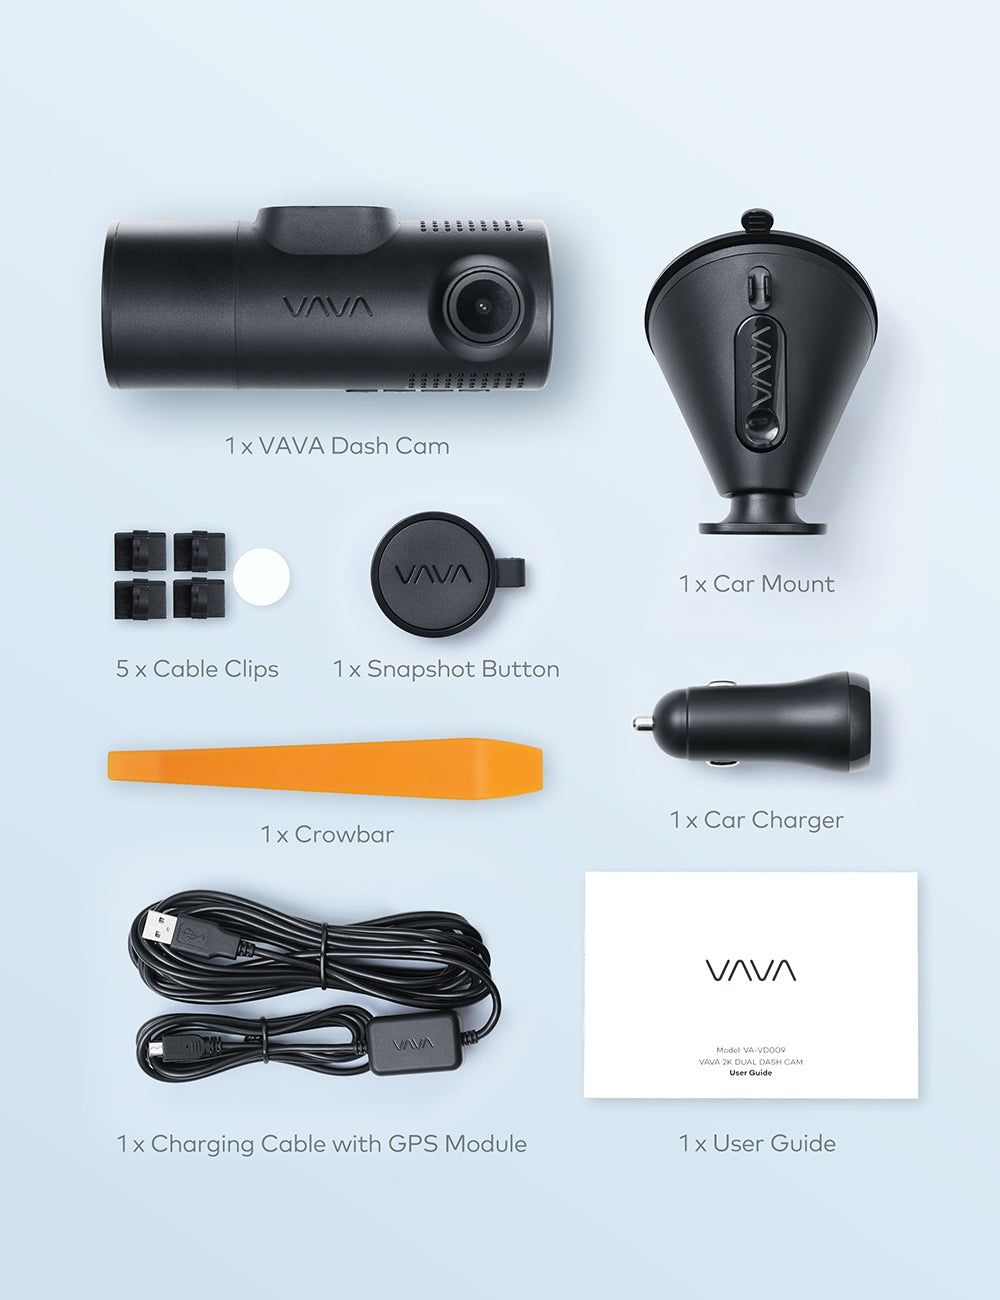 Умный американский 2K видеорегистратор оптика Sony WIFI GPS Приложение